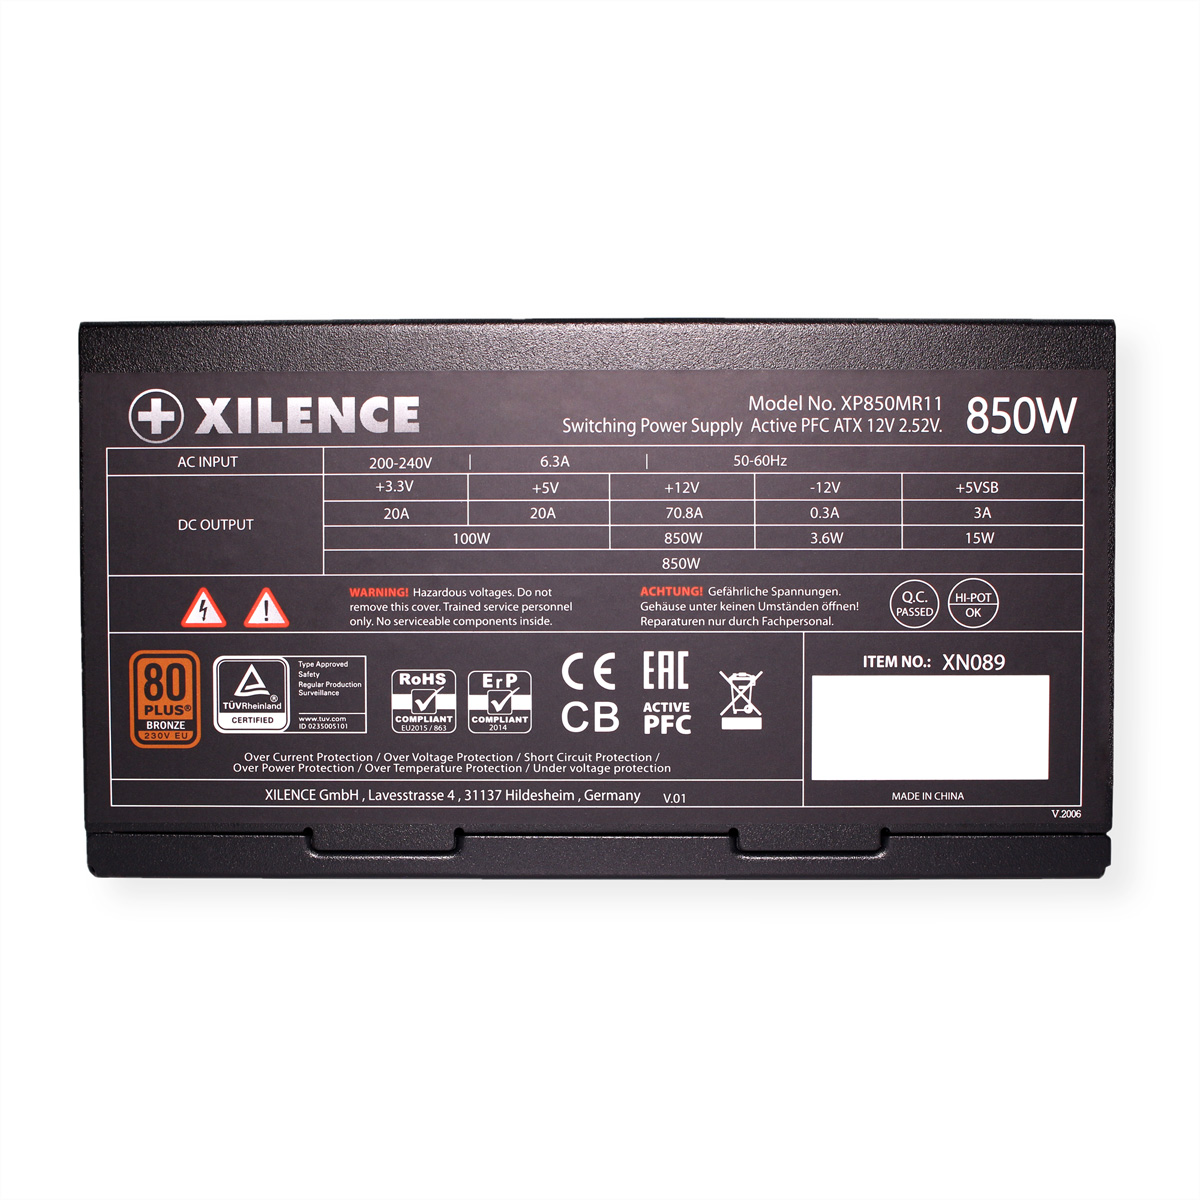 XILENCE XP850MR11 850 Netzteil PC Watt